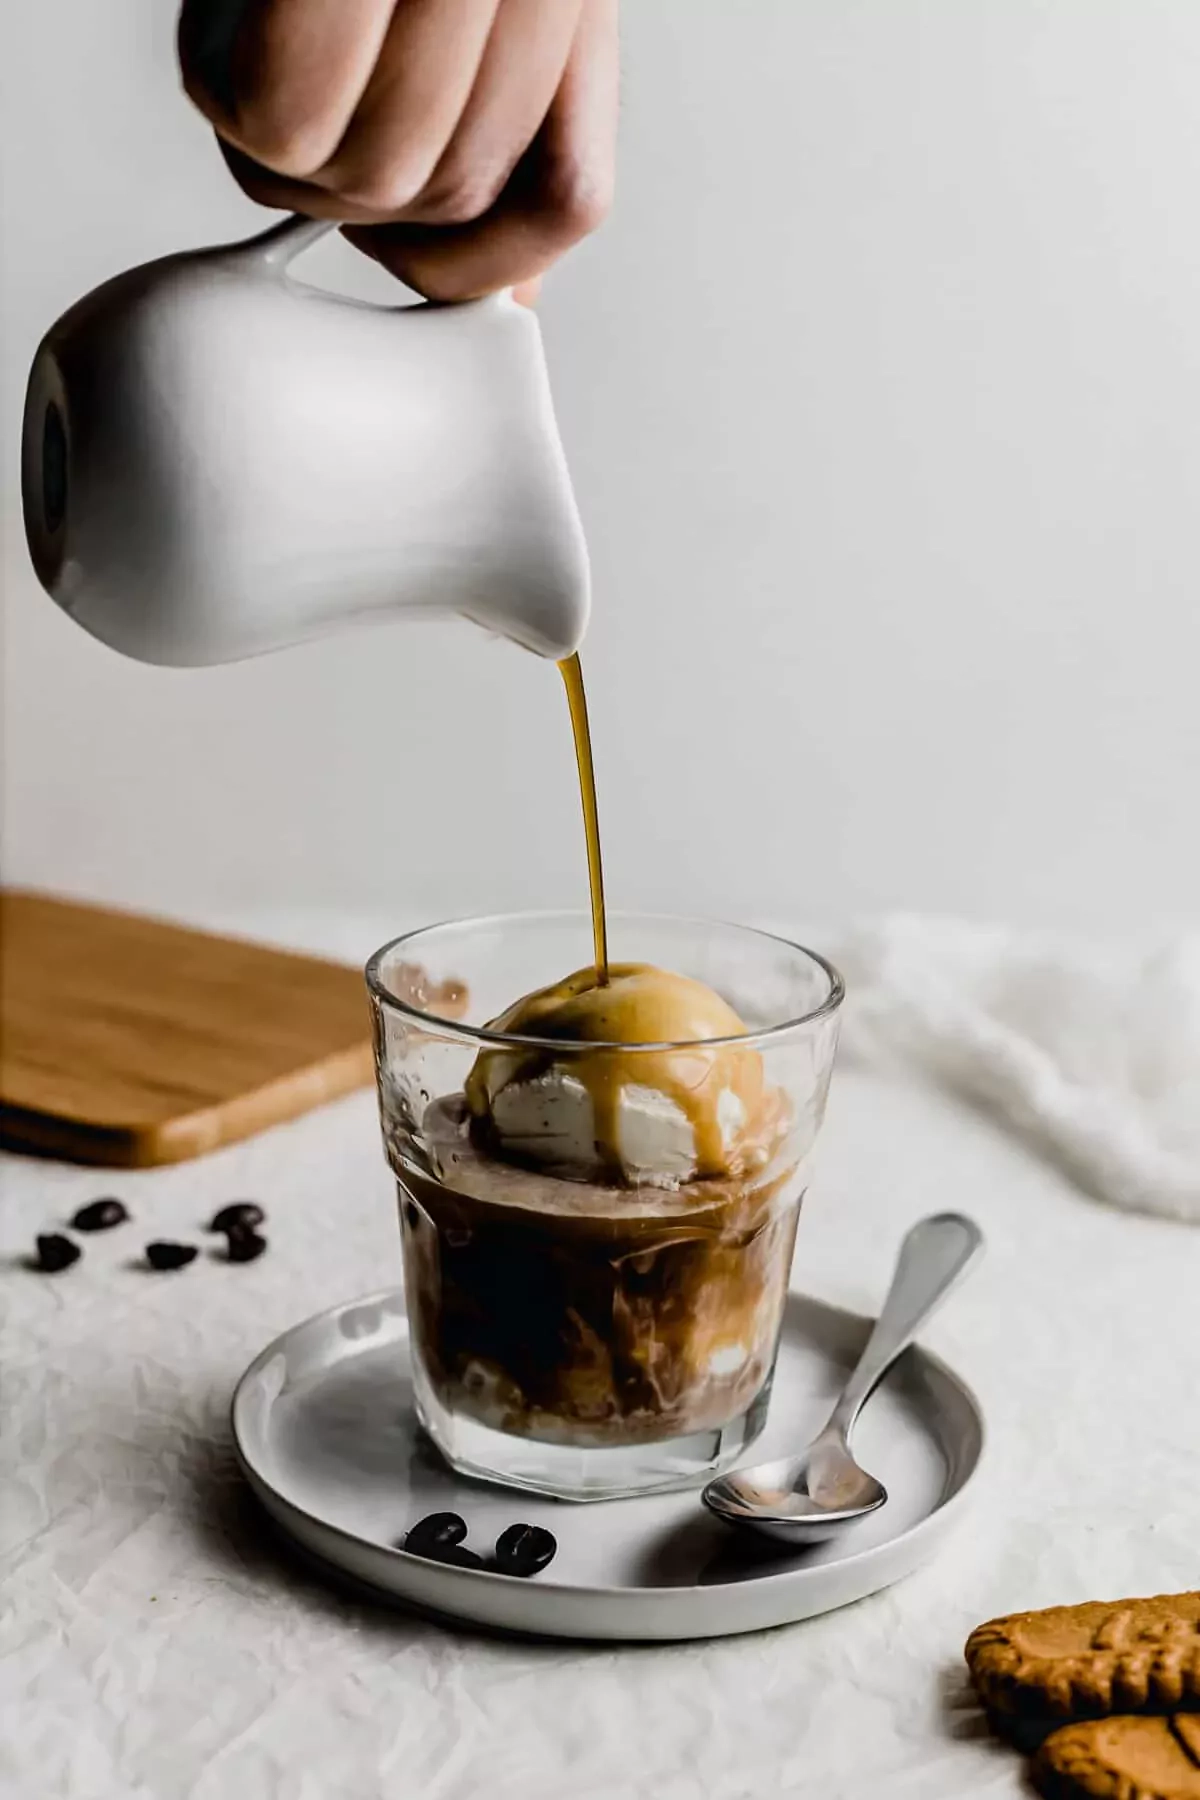 Włoska kawa Affogato - włoska kawa z lodami